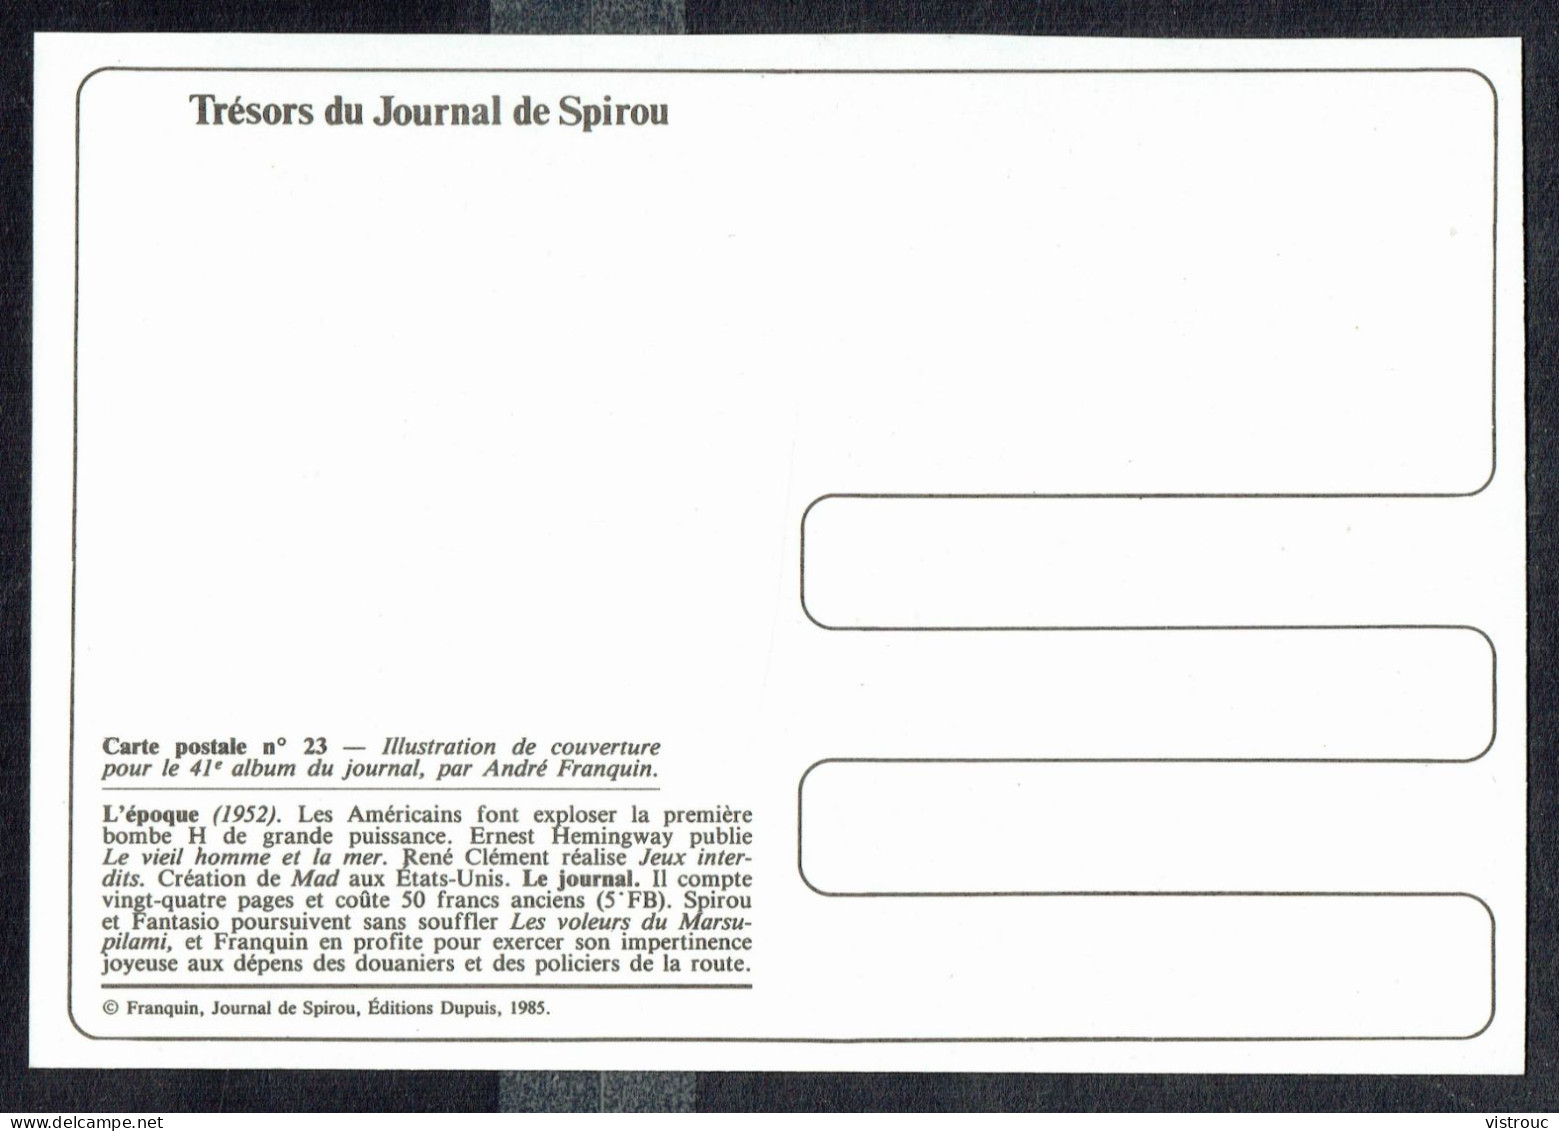 SPIROU - CP N° 23 : Illustration Couverture Album N° 41 De FRANQUIN - Non Circulé - Not Circulated - Ed. DUPUIS - 1985. - Comicfiguren